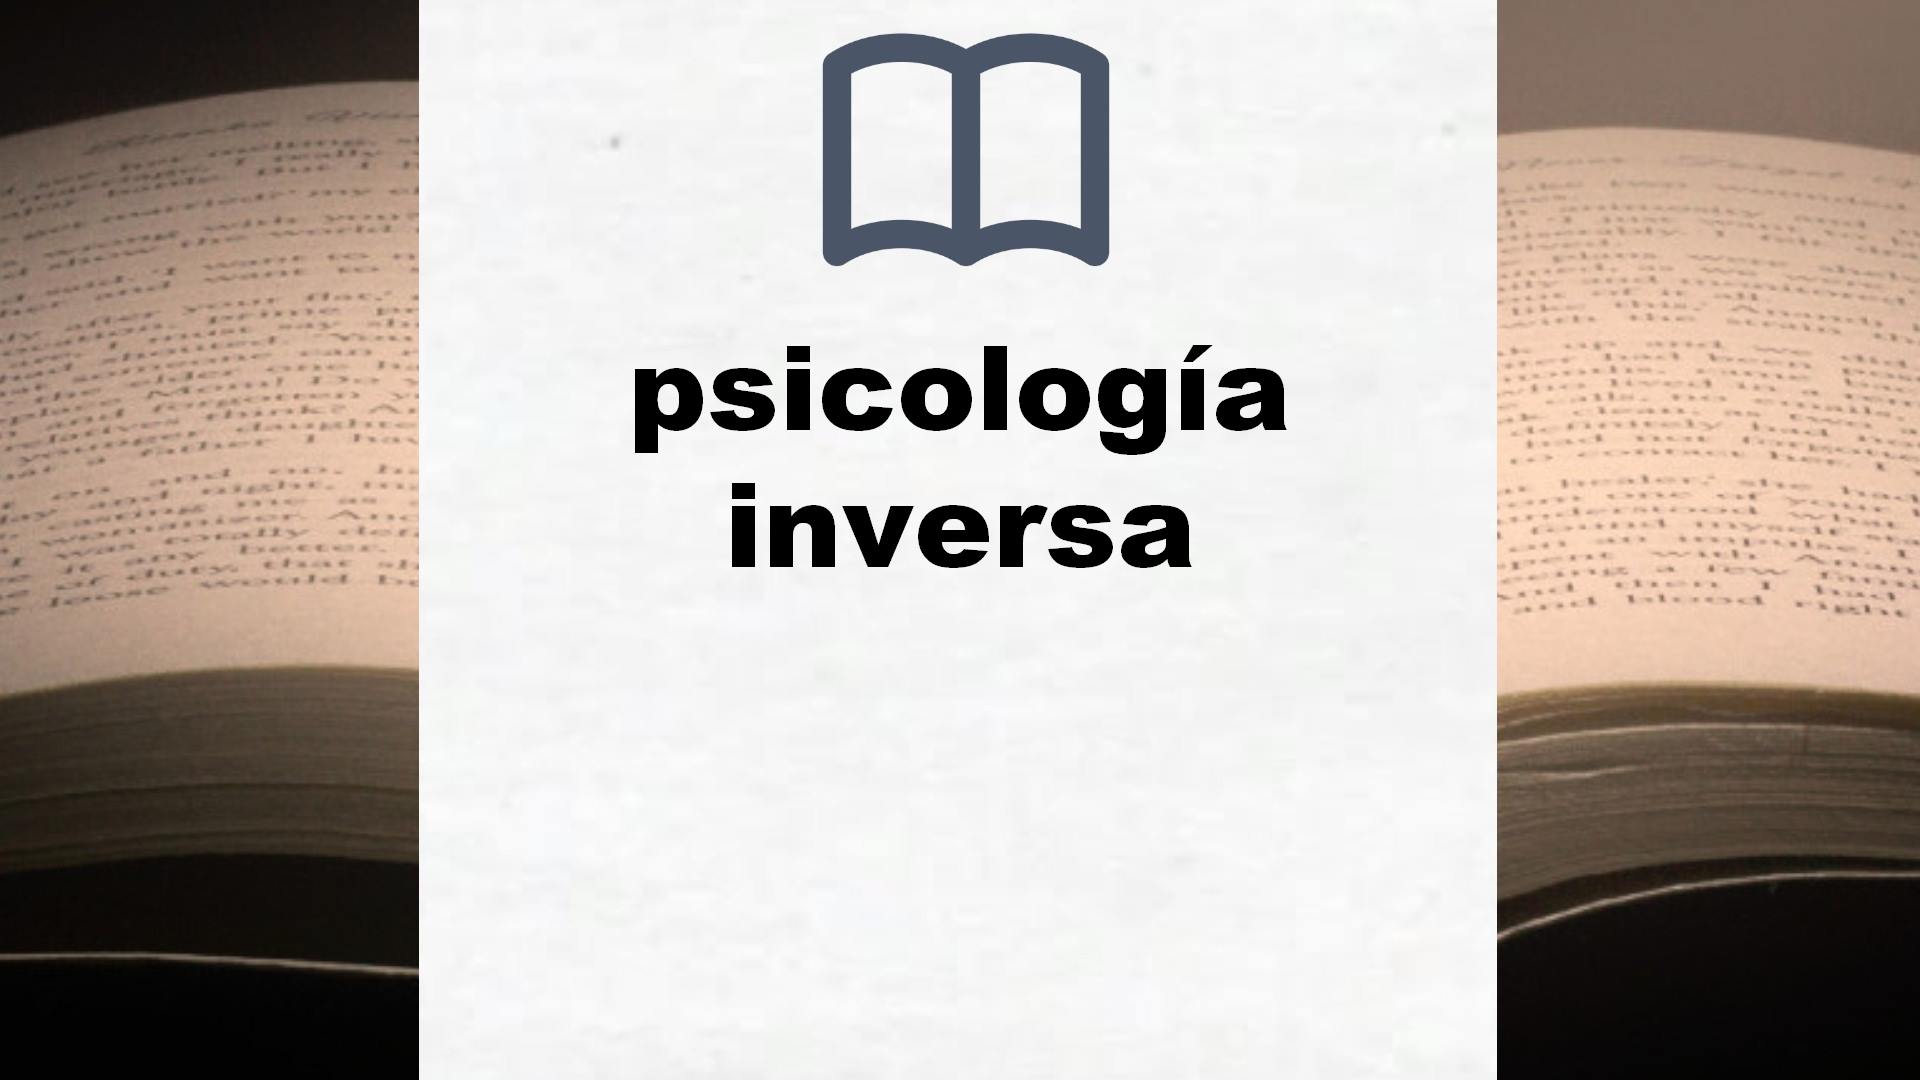 Libros sobre psicología inversa